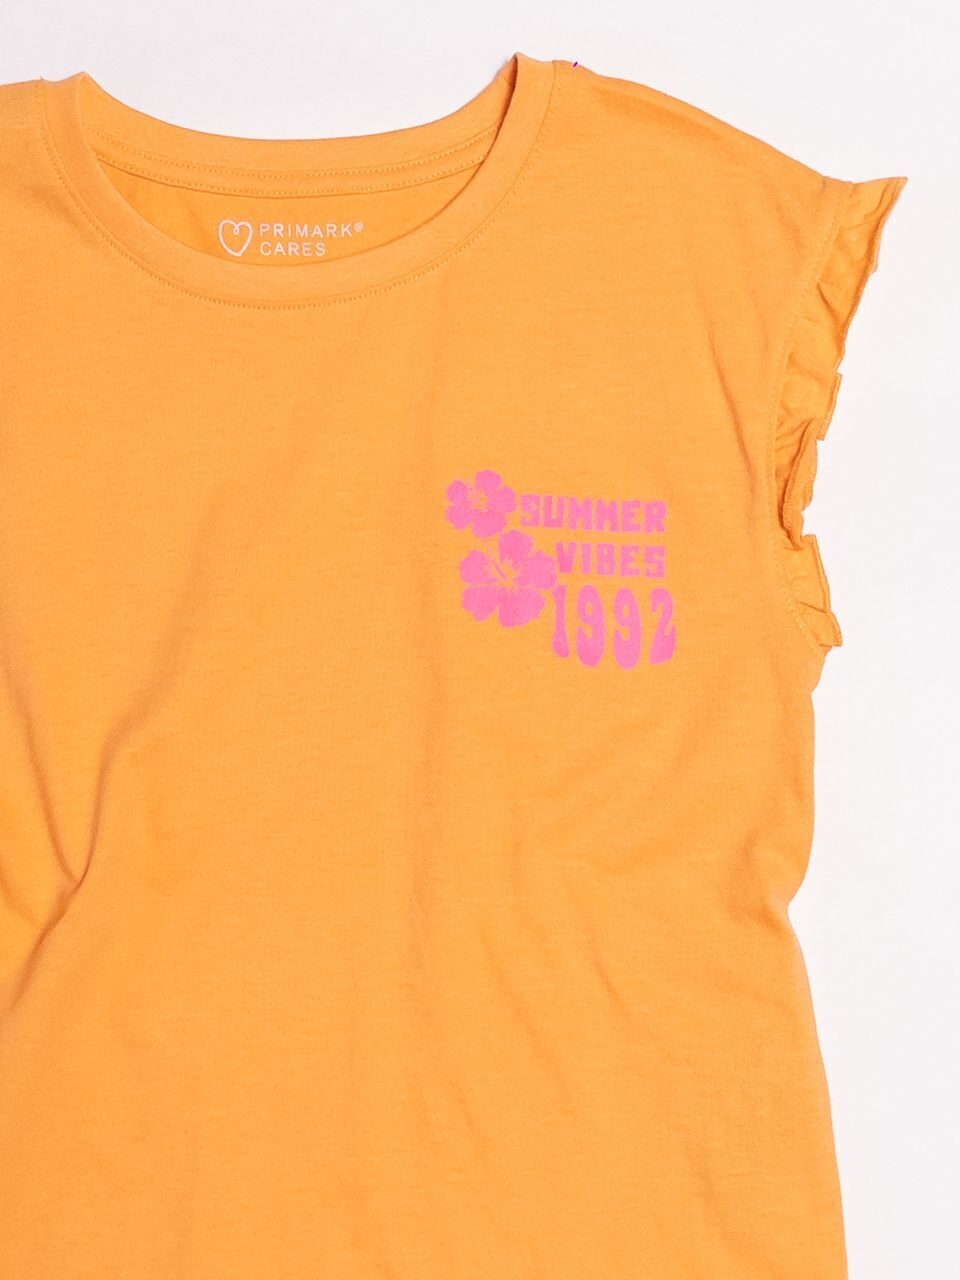 Футболка хлопковая для девочки без рукавов с оборками на плечах цвет оранжевый прорезиненный принт на рост 128 см 7-8 лет Primark